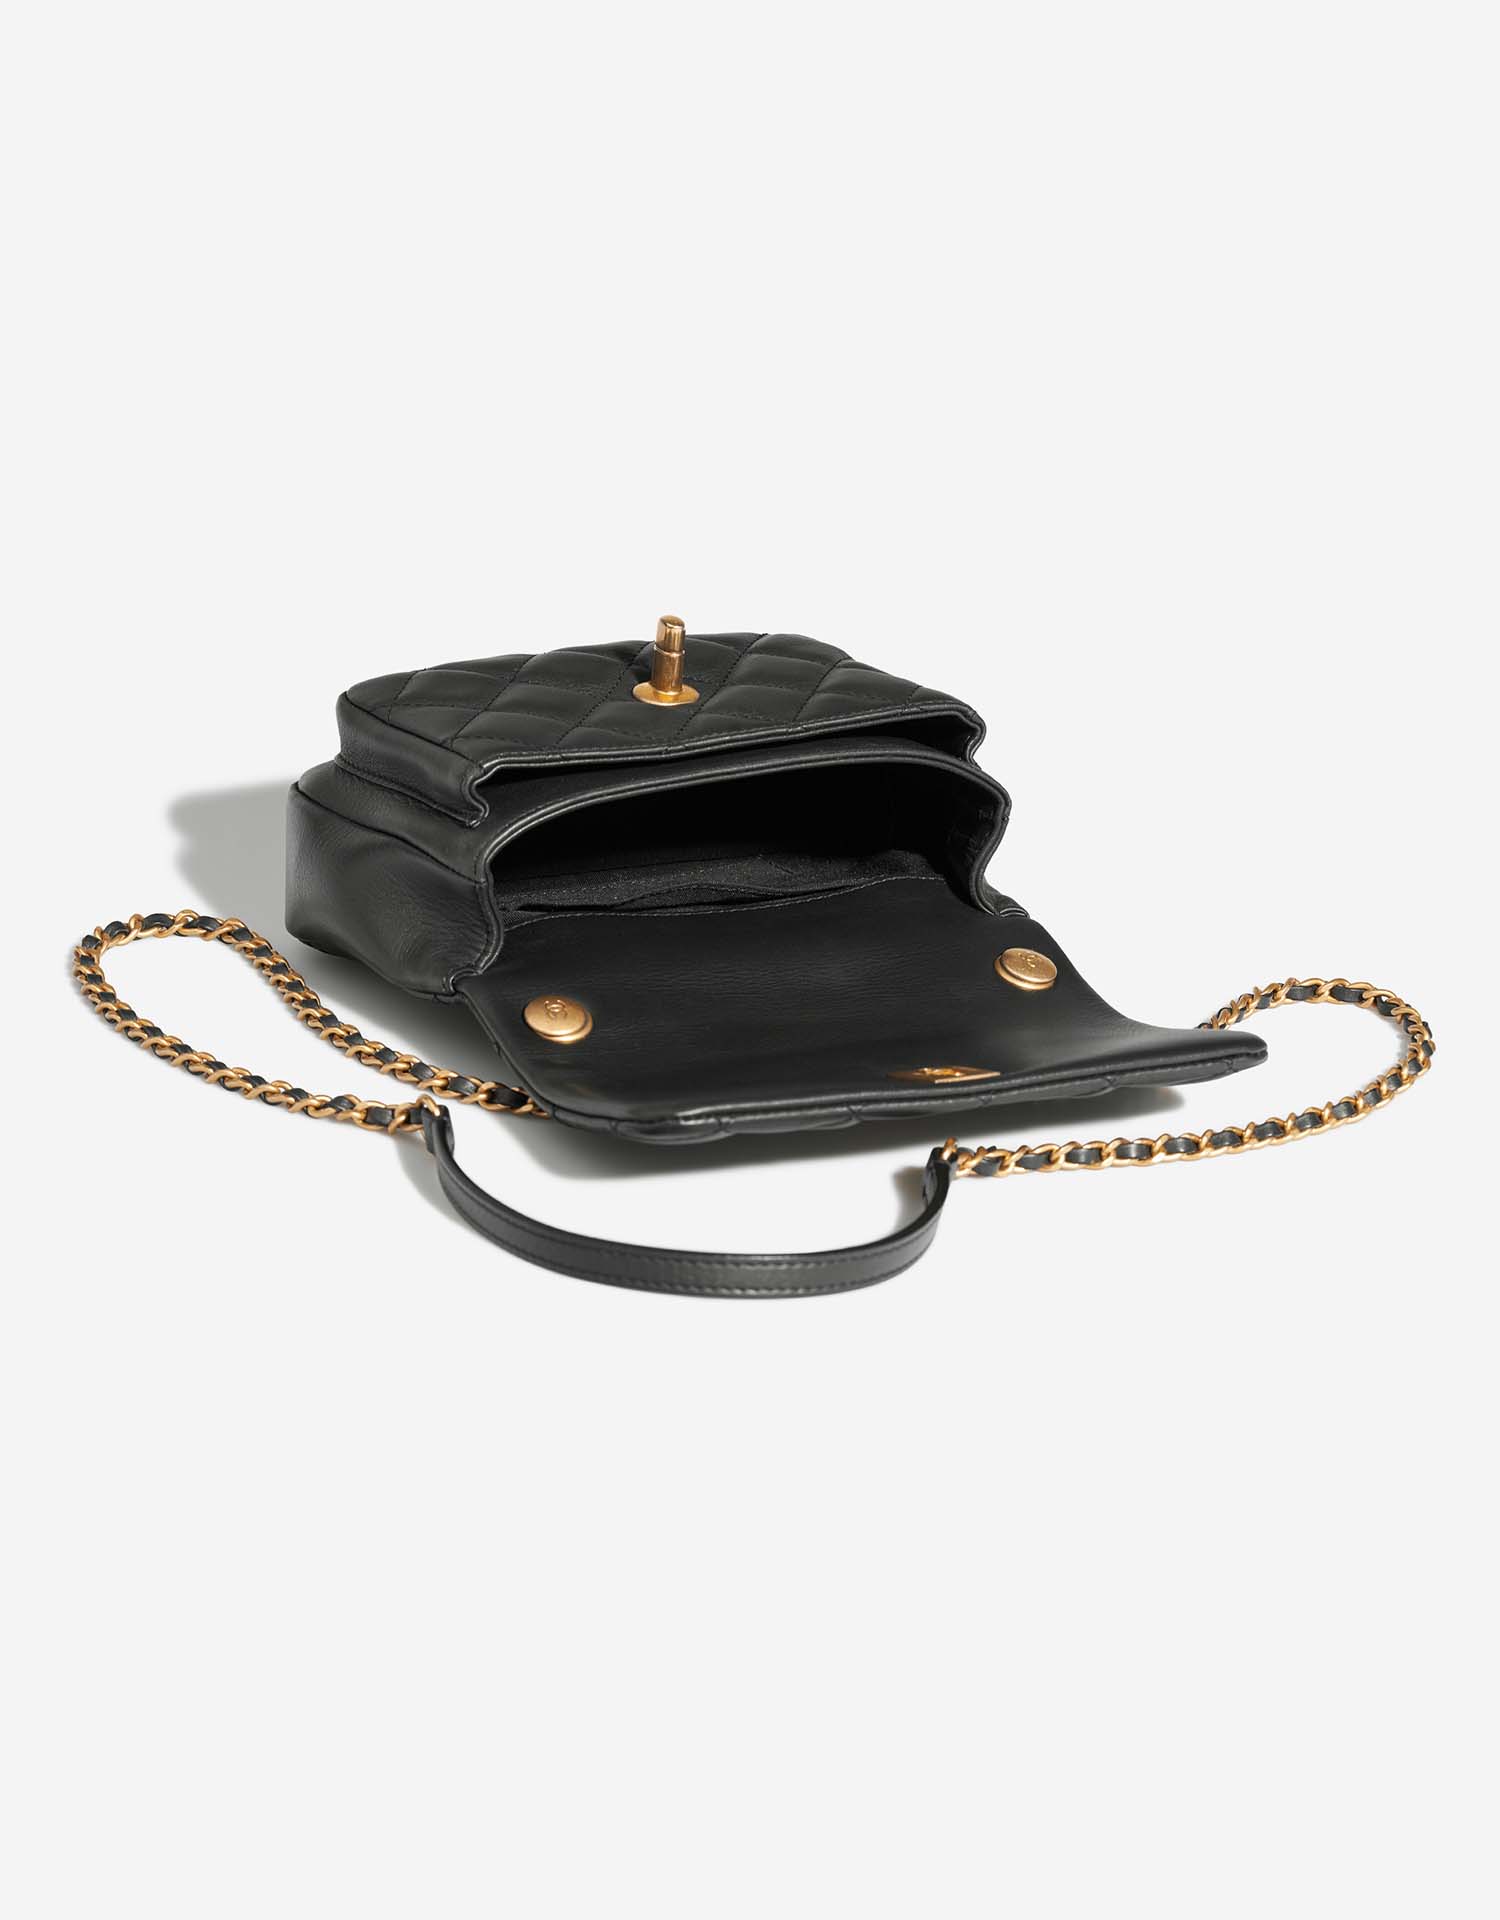 Chanel TimelessHandle Small Black Inside | Verkaufen Sie Ihre Designer-Tasche auf Saclab.com